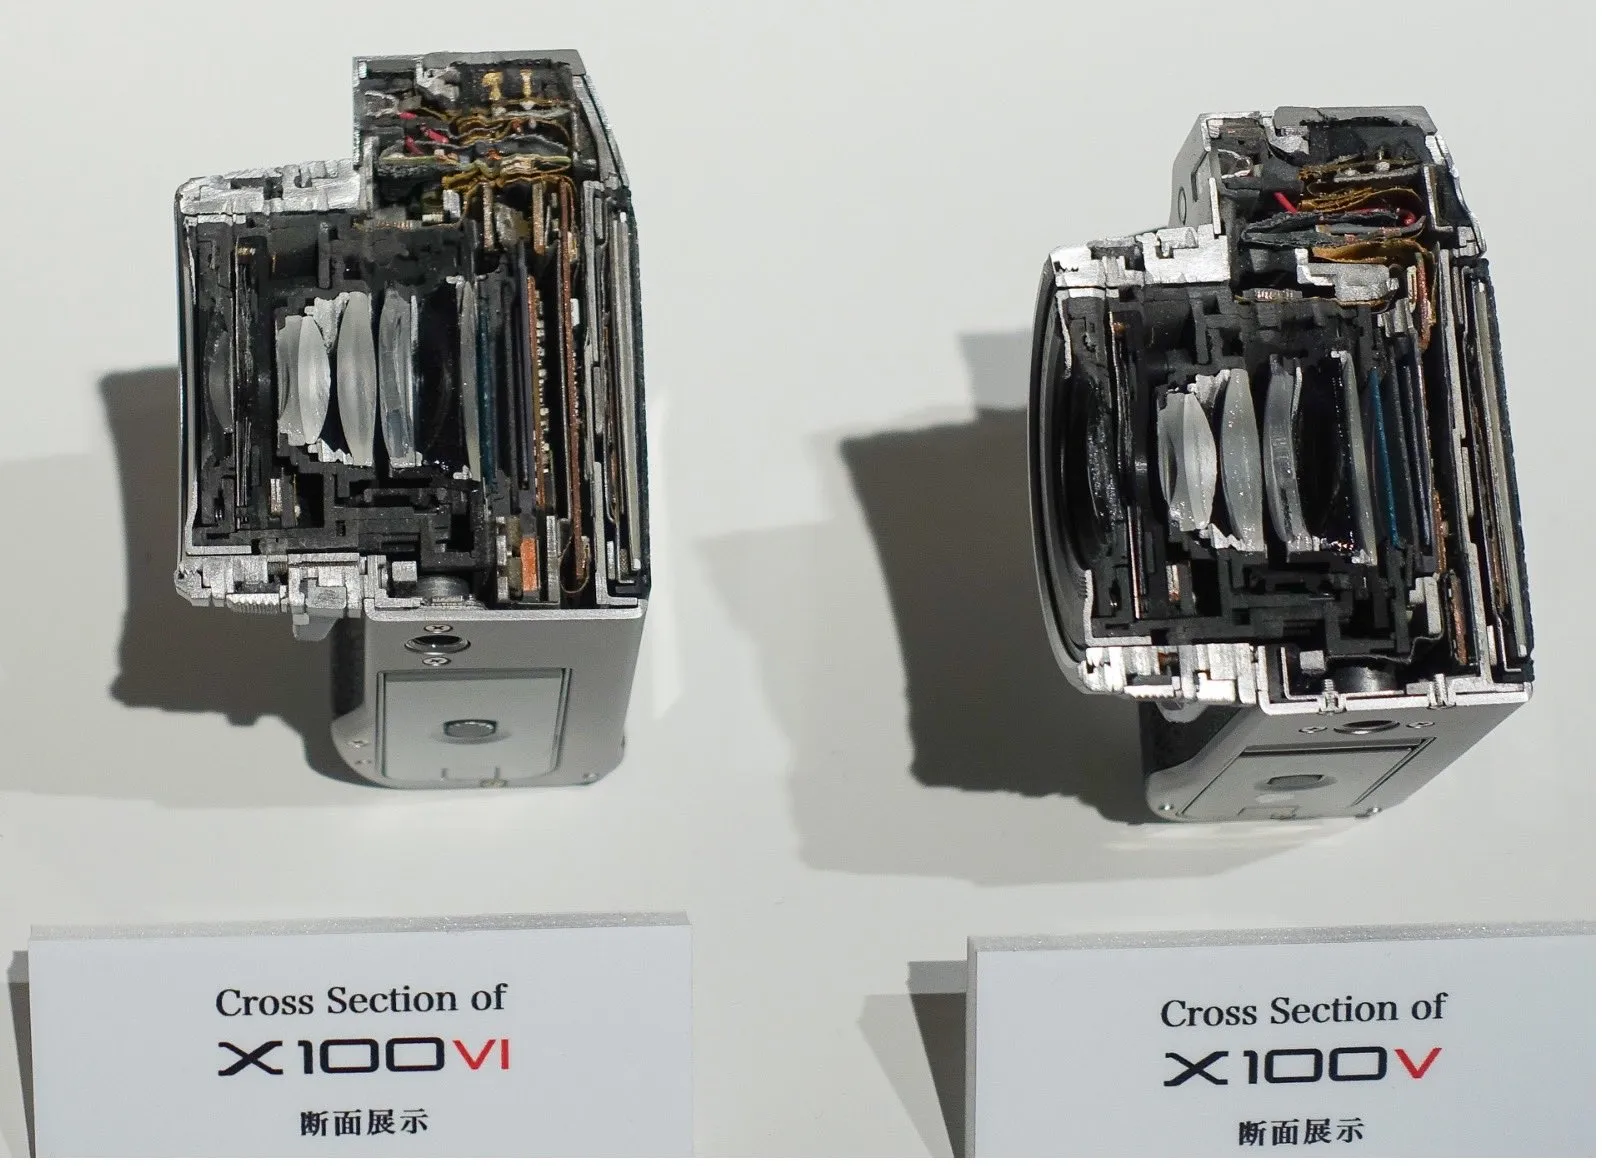 So sánh kích thước và thiết kế bên trong Fujifilm X100VI với X100V thông qua loạt ảnh cắt đôi thiết bị